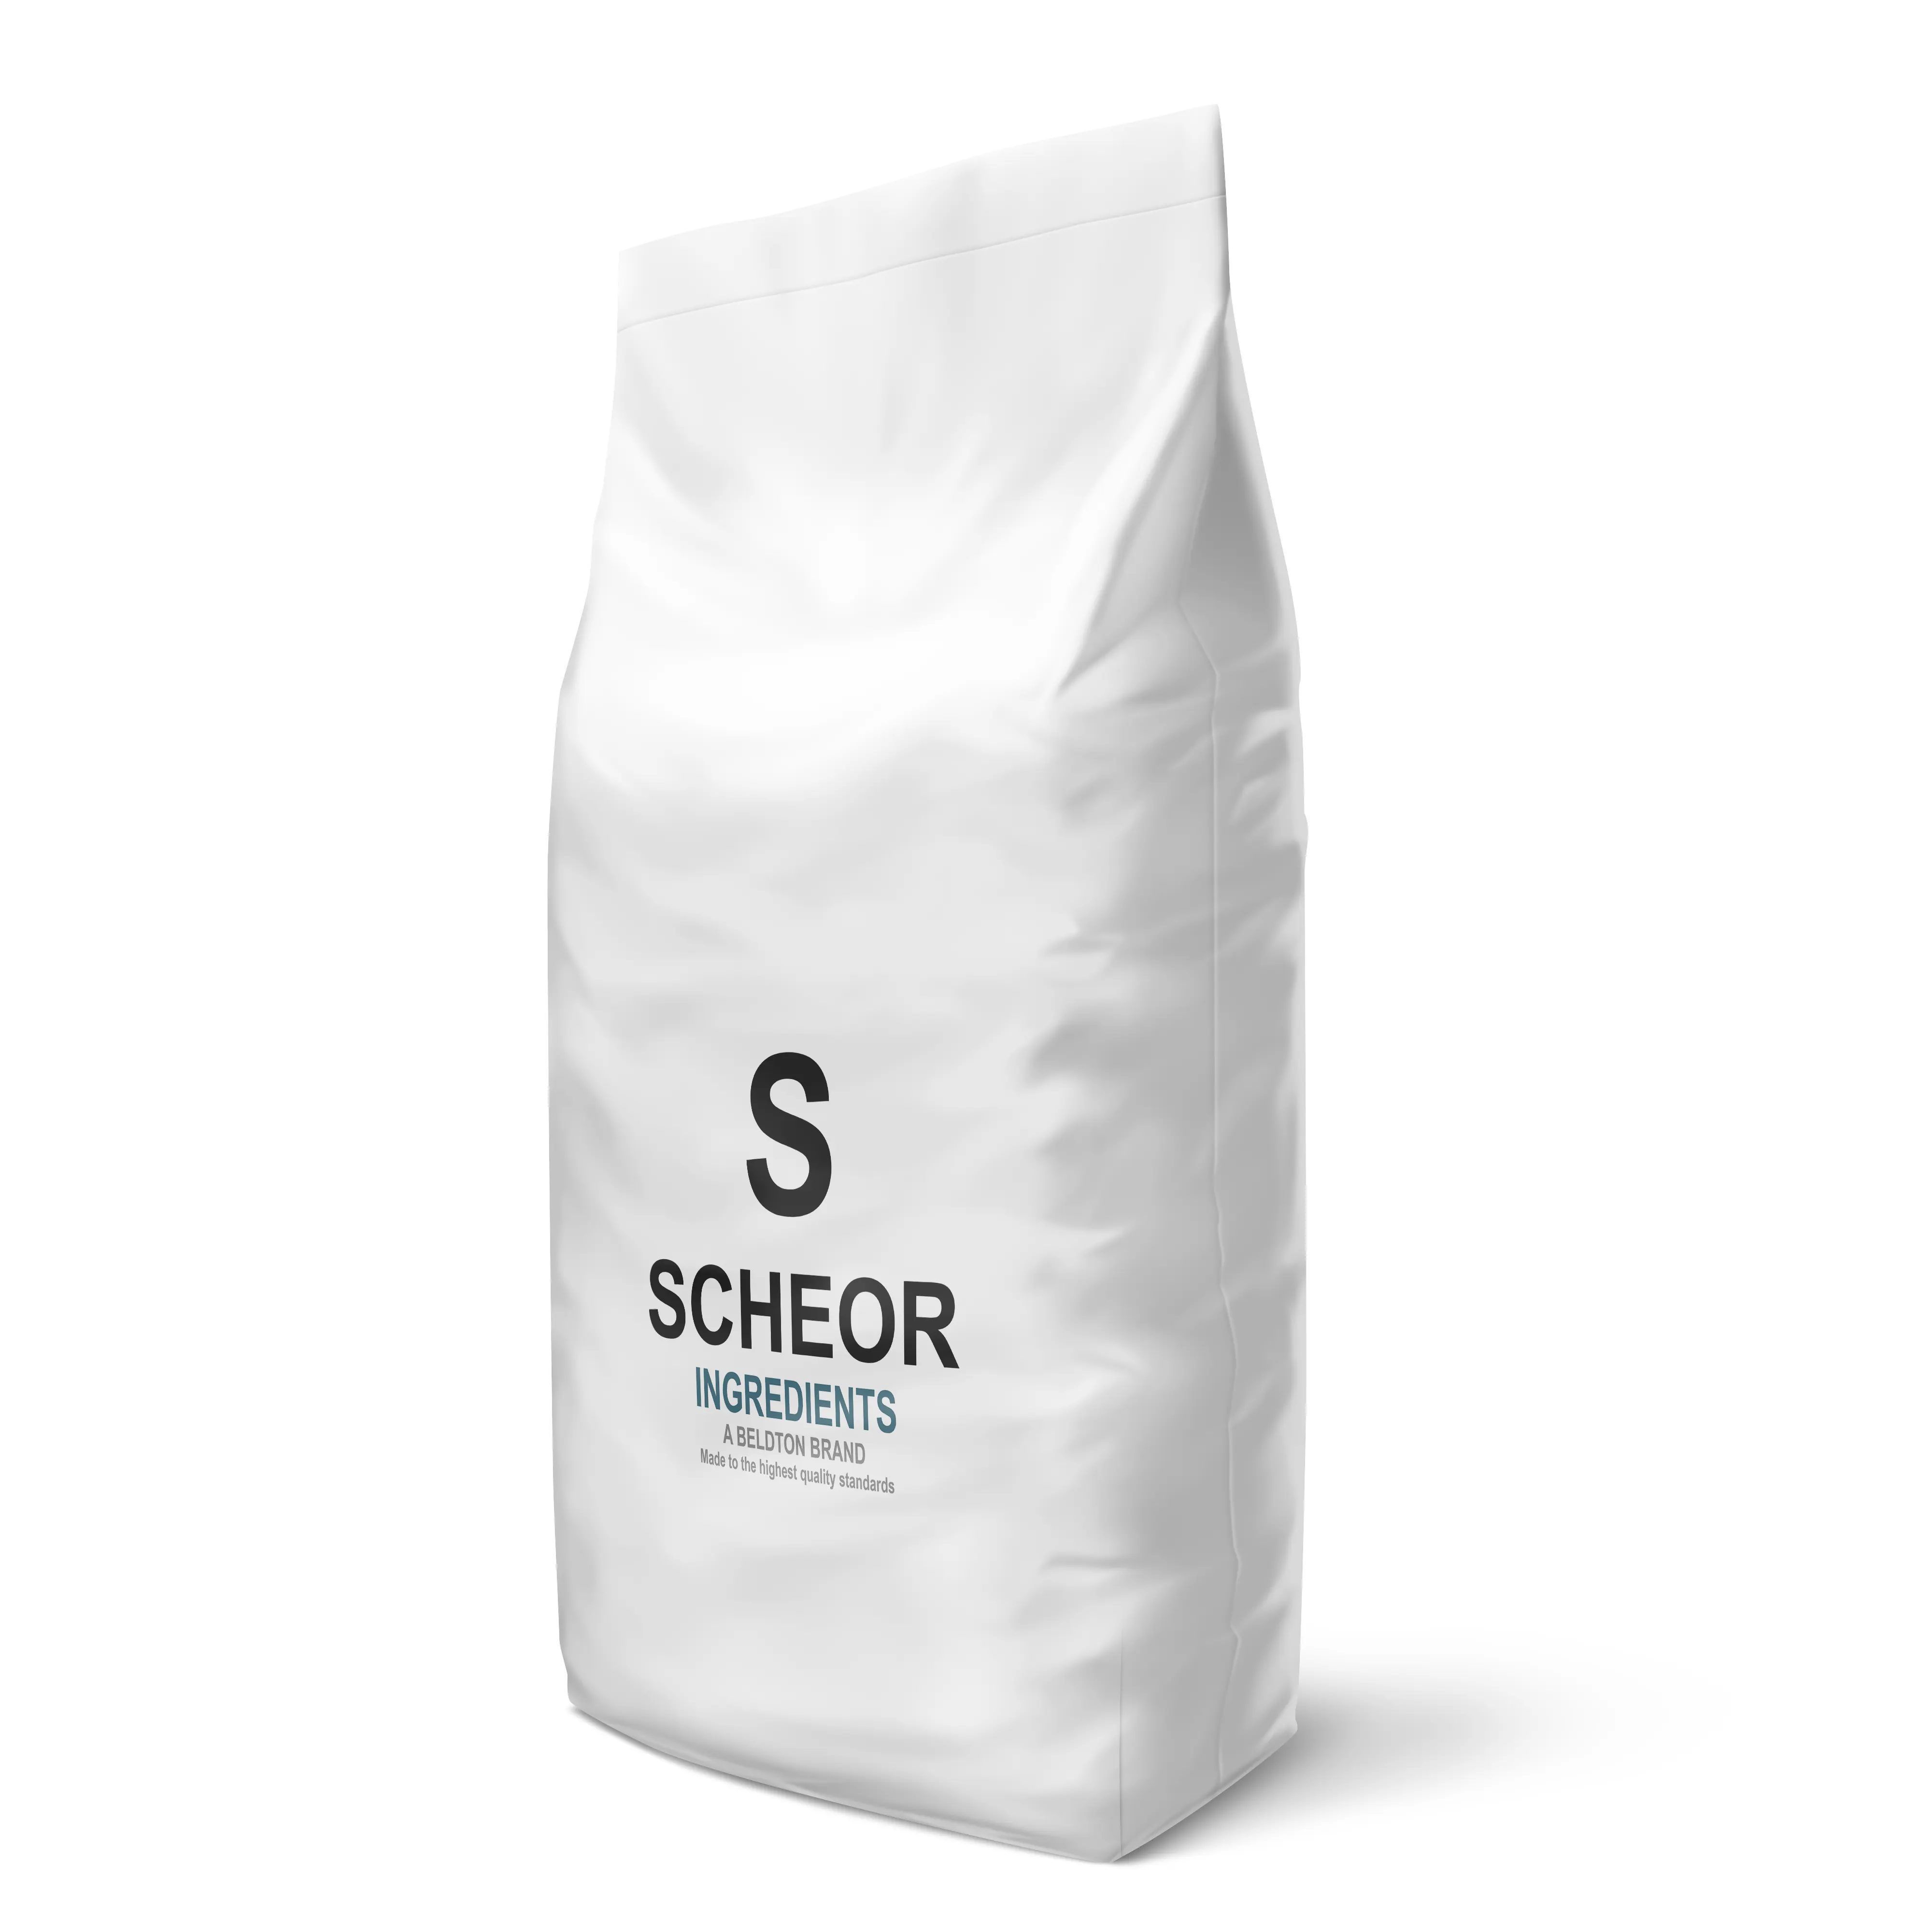 Сывороточный белковый концентрат Scheor WPC80 10 25 кг, большие пакеты, ингредиенты OEM OBM, частная марка